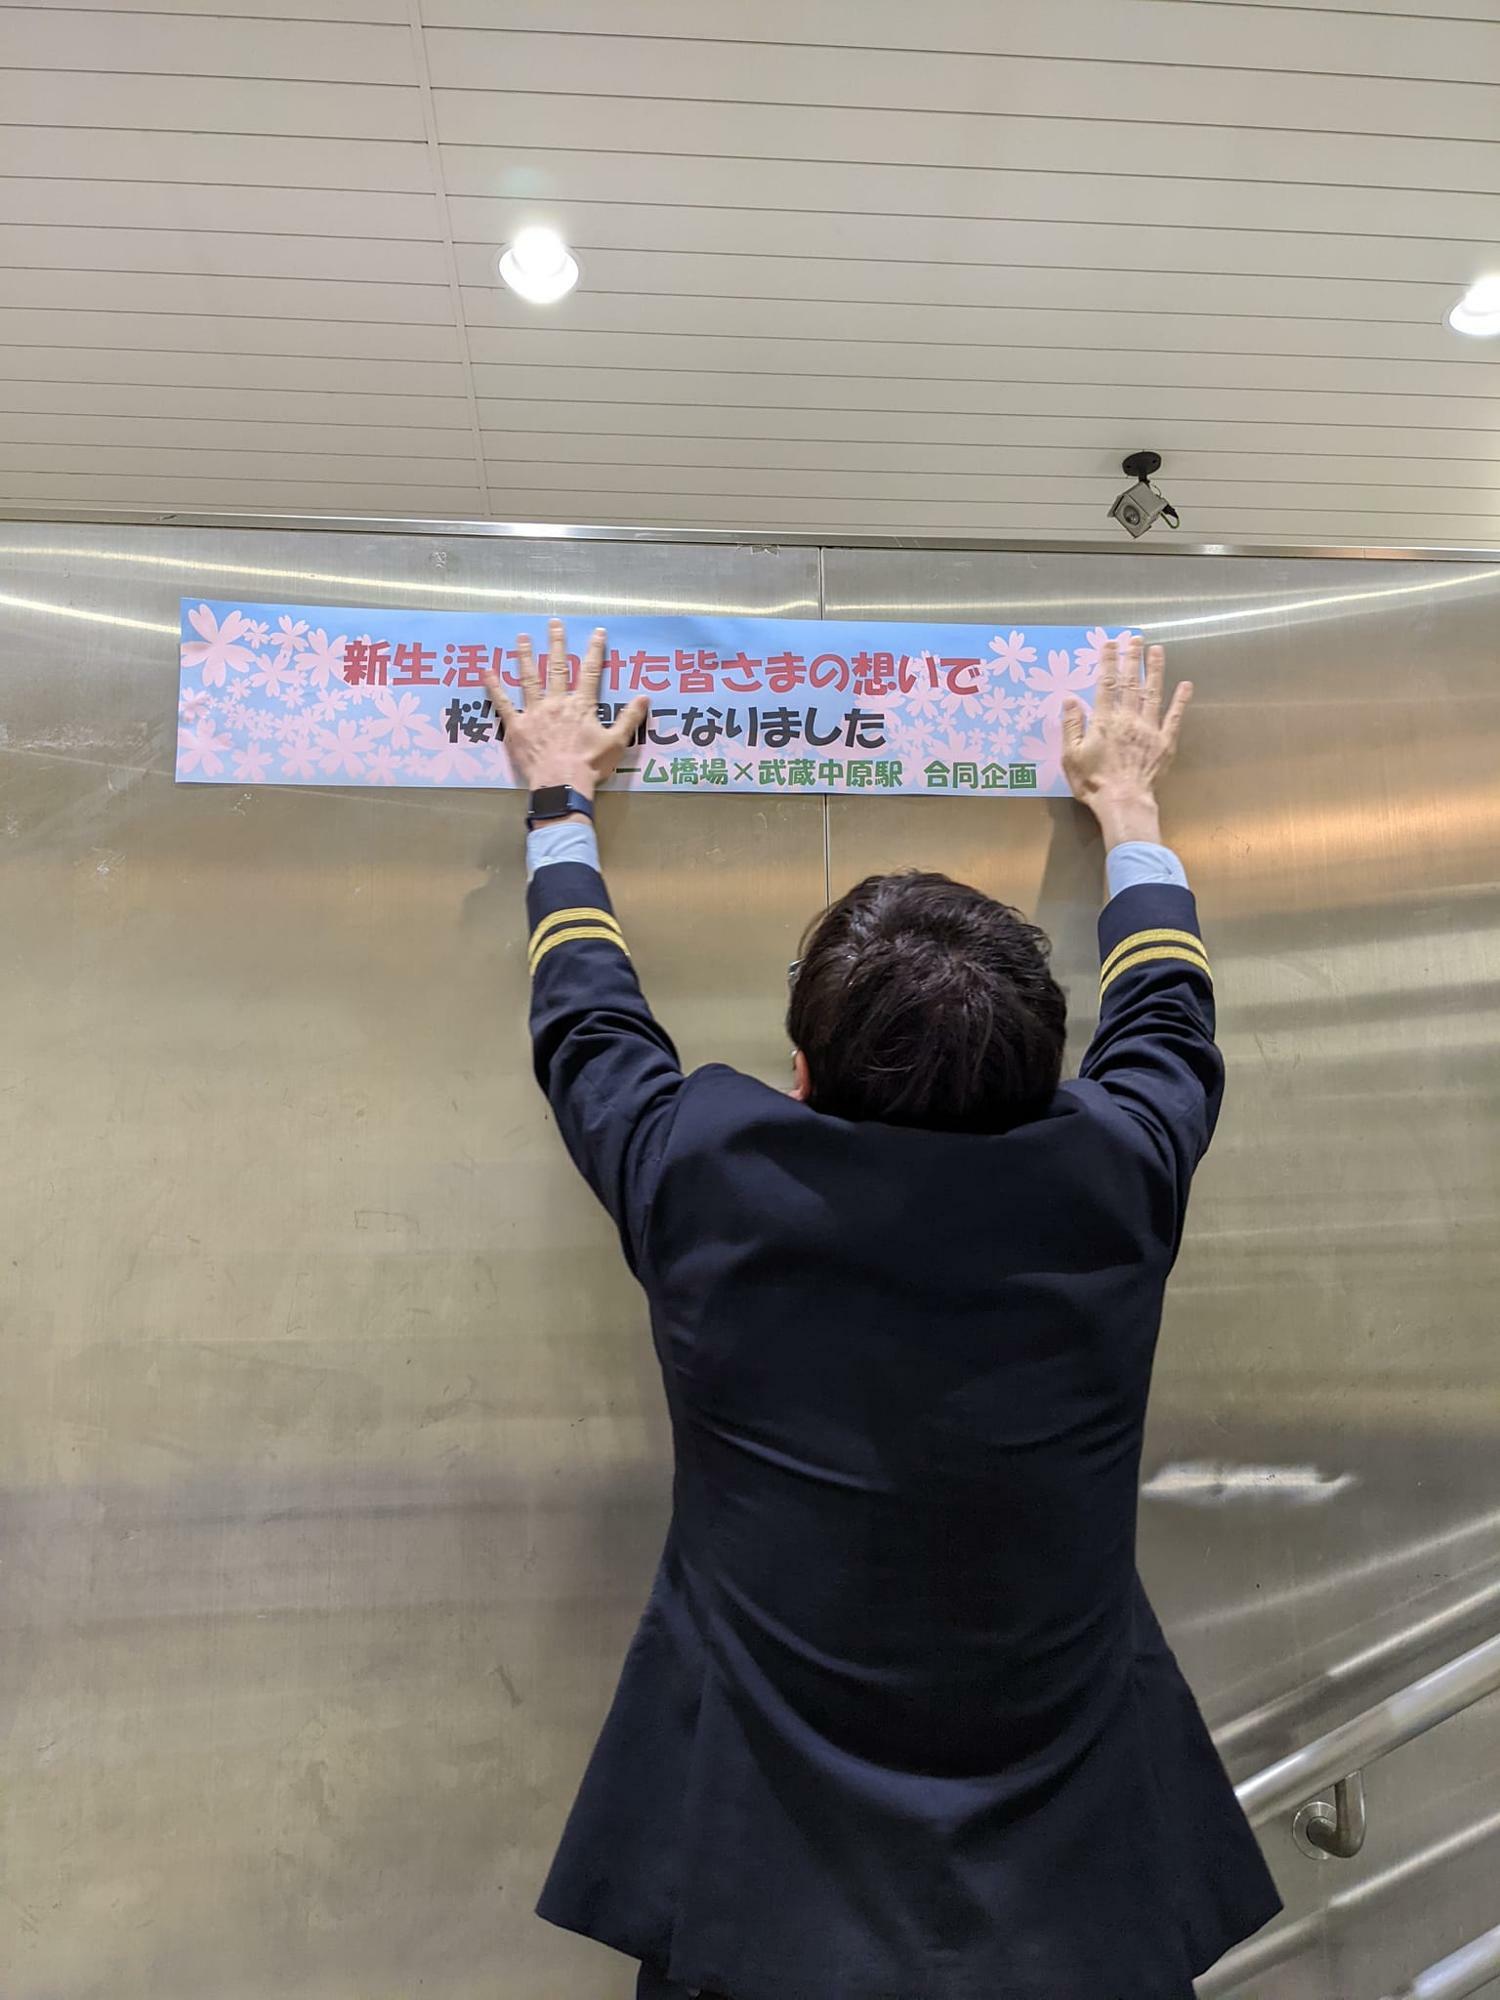 「チーム橋場」と武蔵中原駅の合同企画であることを知らせる掲示をペタリ。長身の松本駅長だからこそ、手が届く高さですね